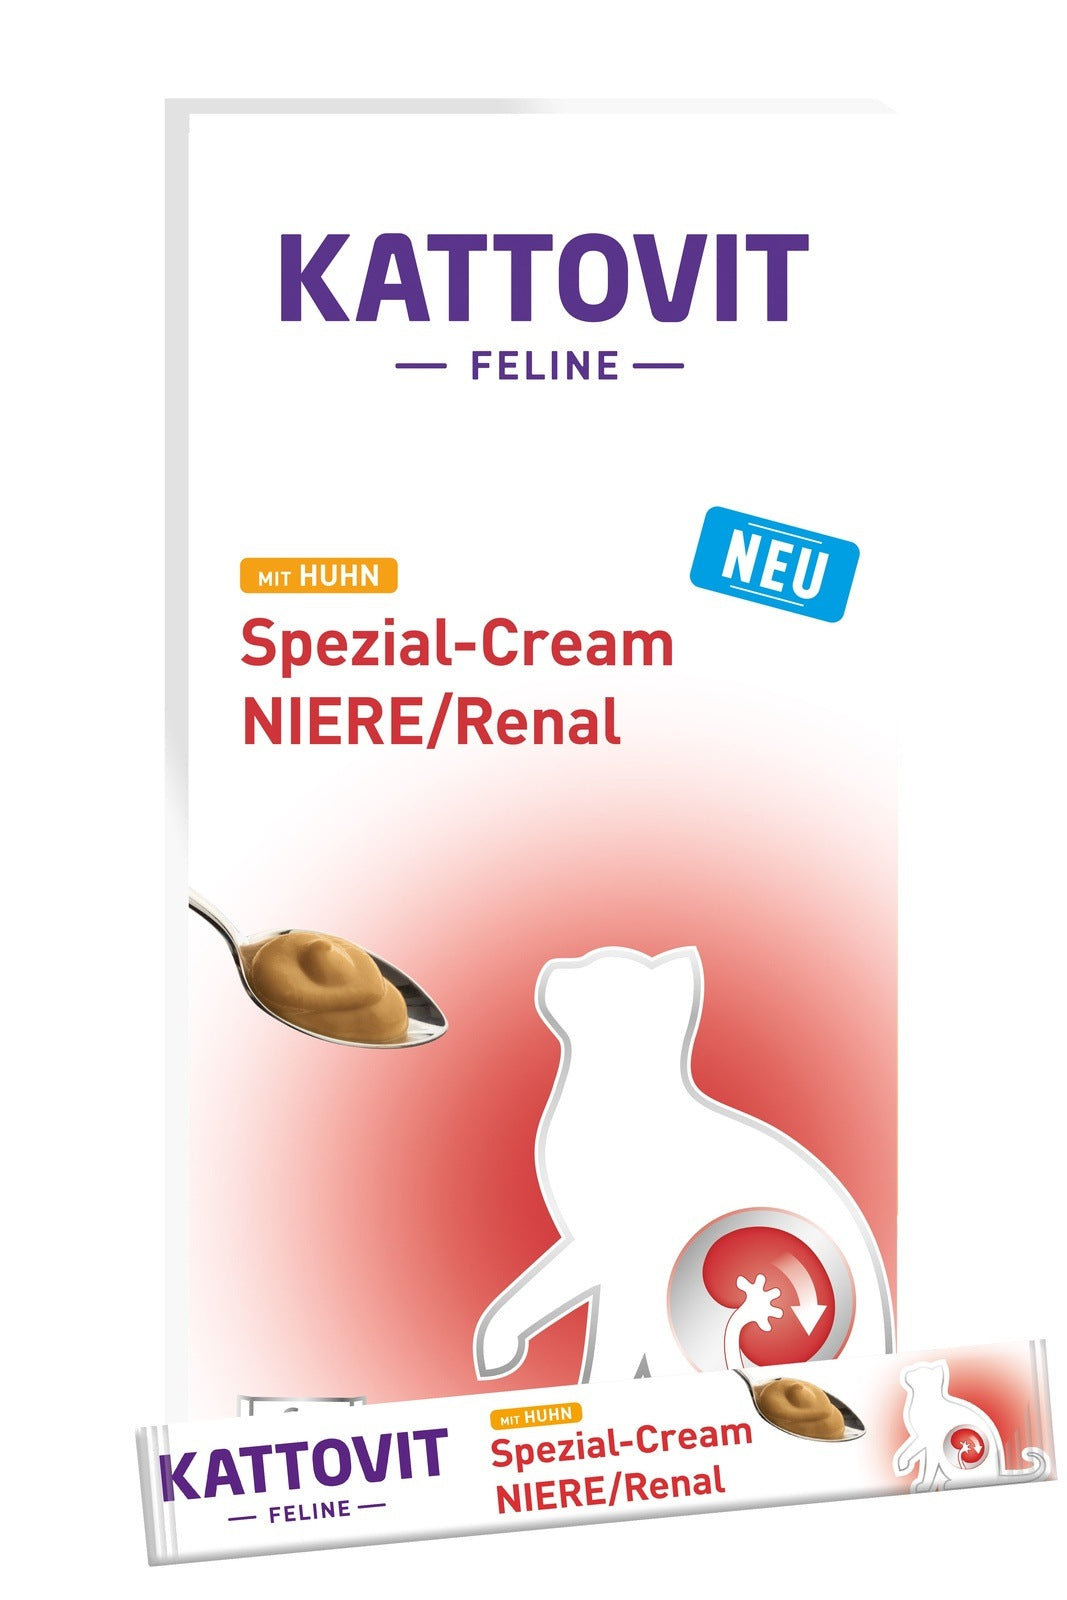 Kattovit NIERE/Renal mit Huhn Spezial-Cream